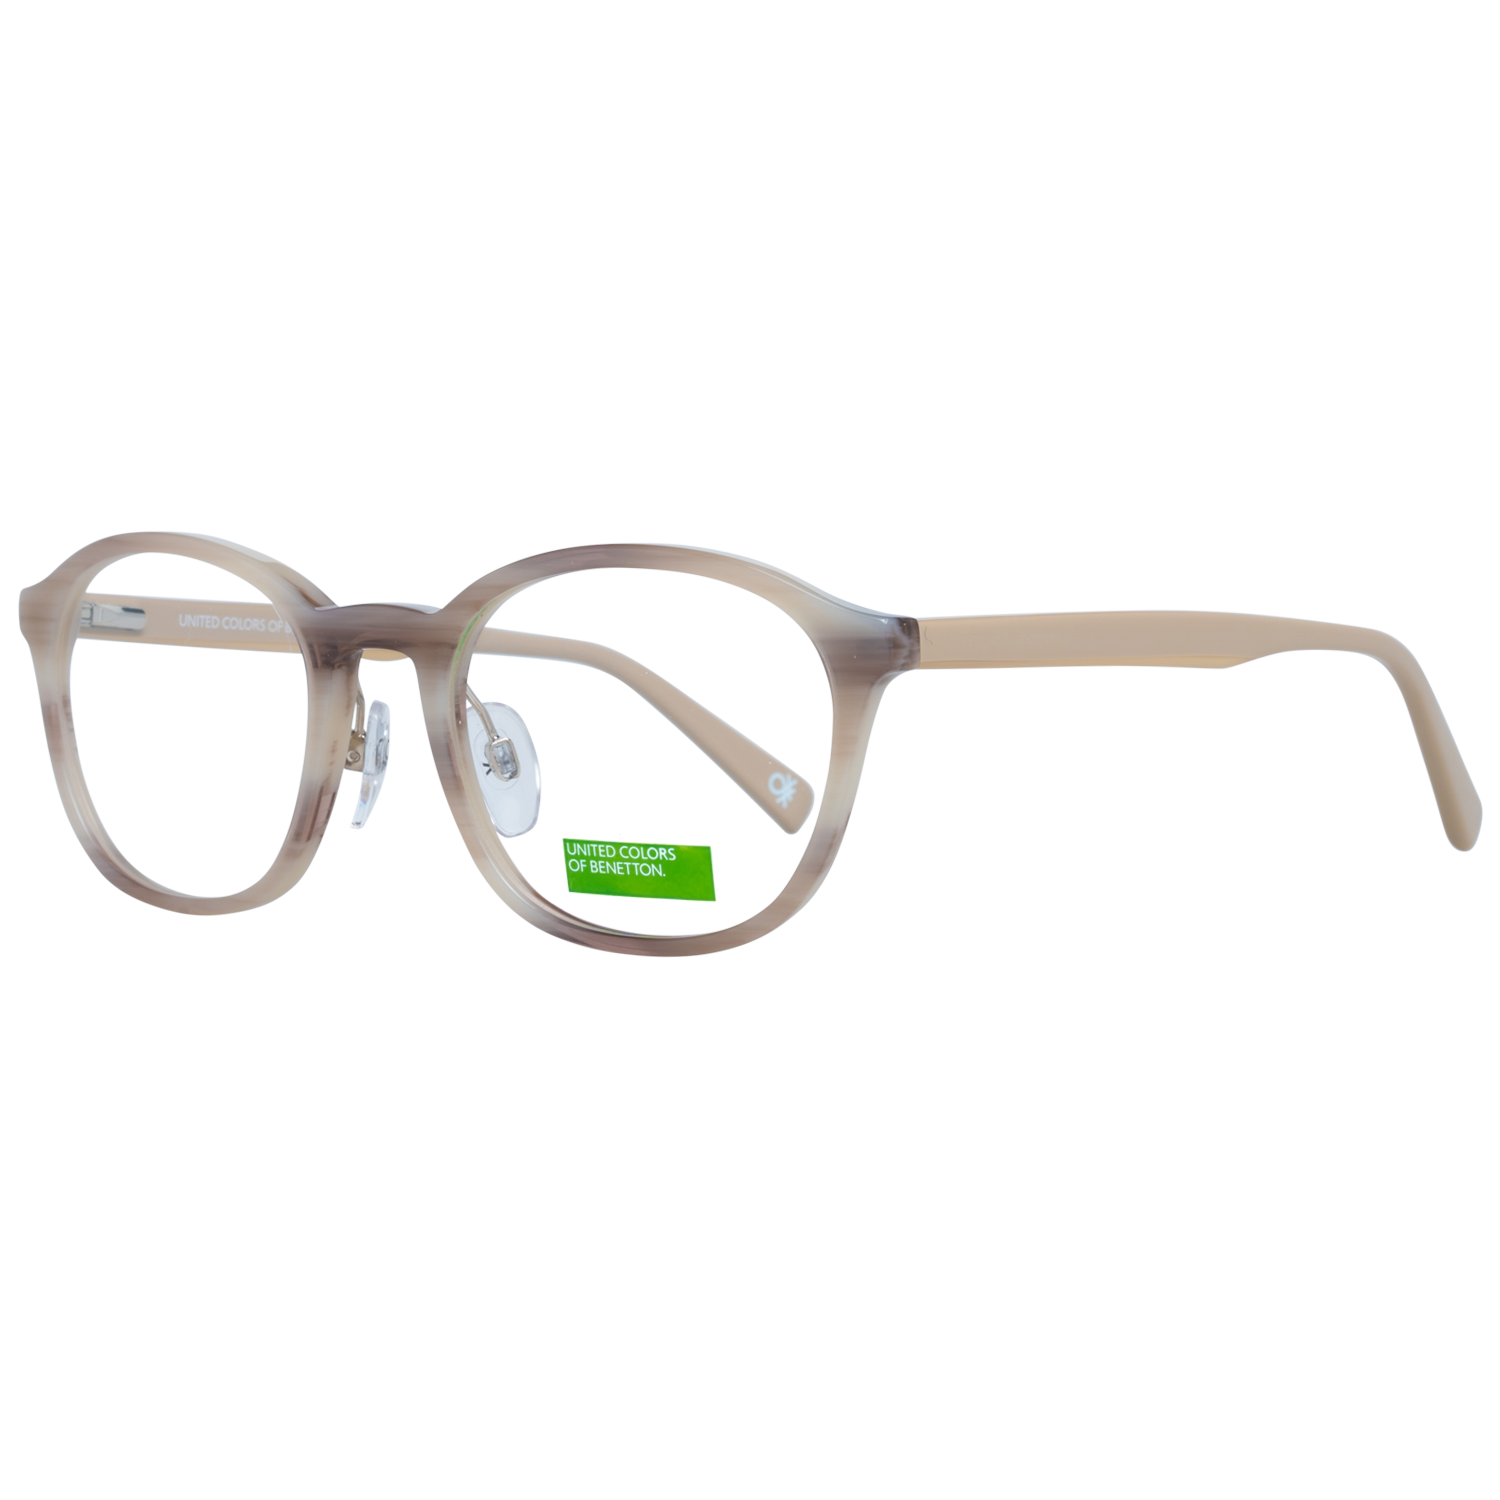 Benetton Frames Benetton Glasses Frames BEO1028 950 49 Eyeglasses Eyewear UK USA Australia 